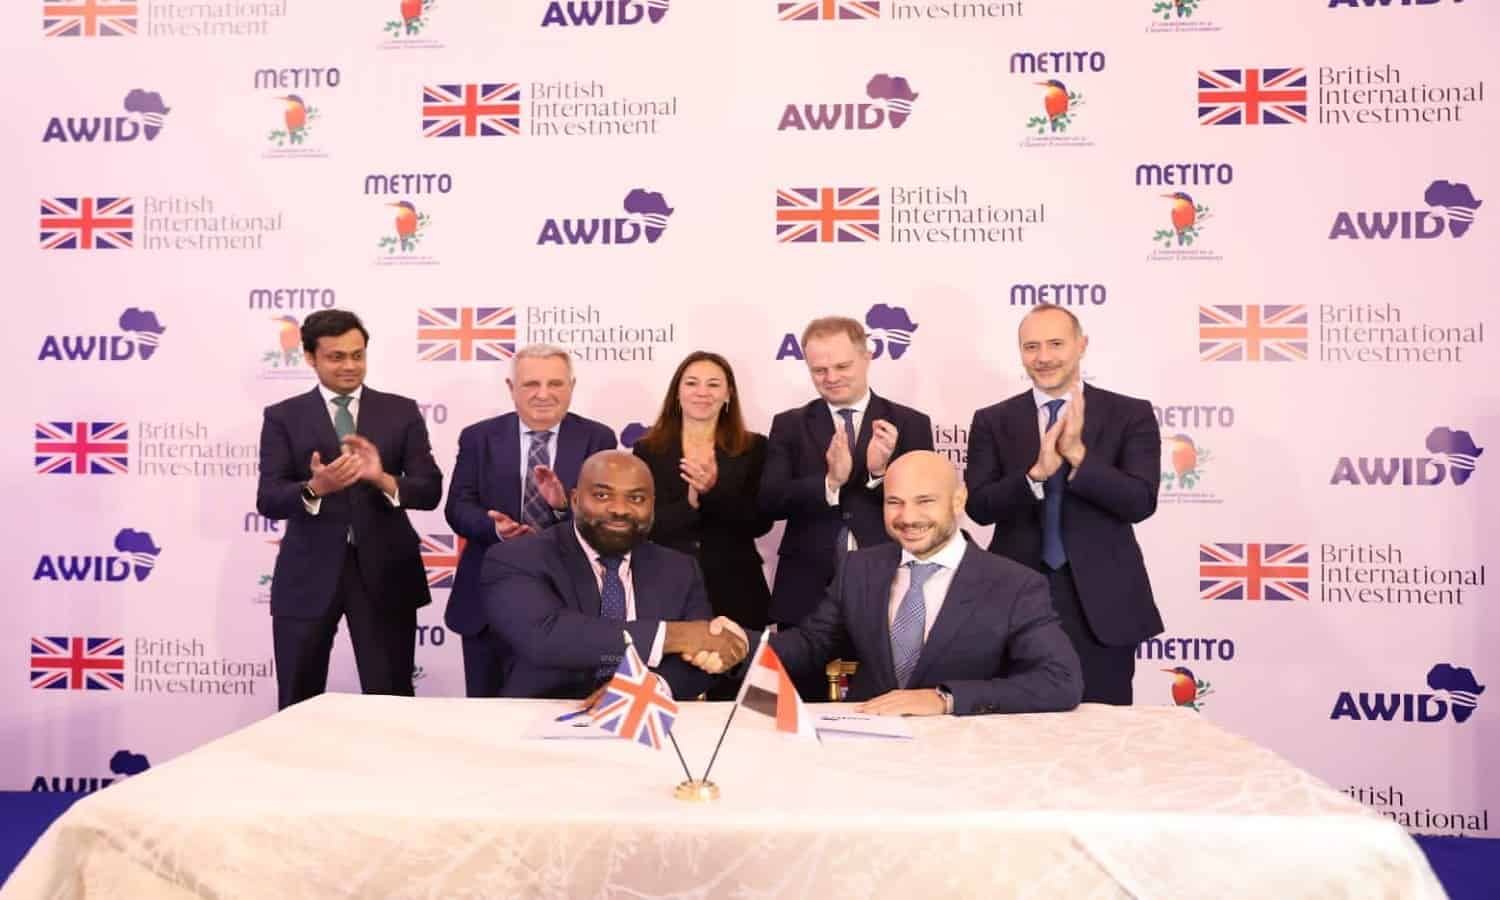 ماتيتو والمؤسسة البريطانية للاستثمار الدولي يطلقان منصة جديدة للاستثمار بمصر